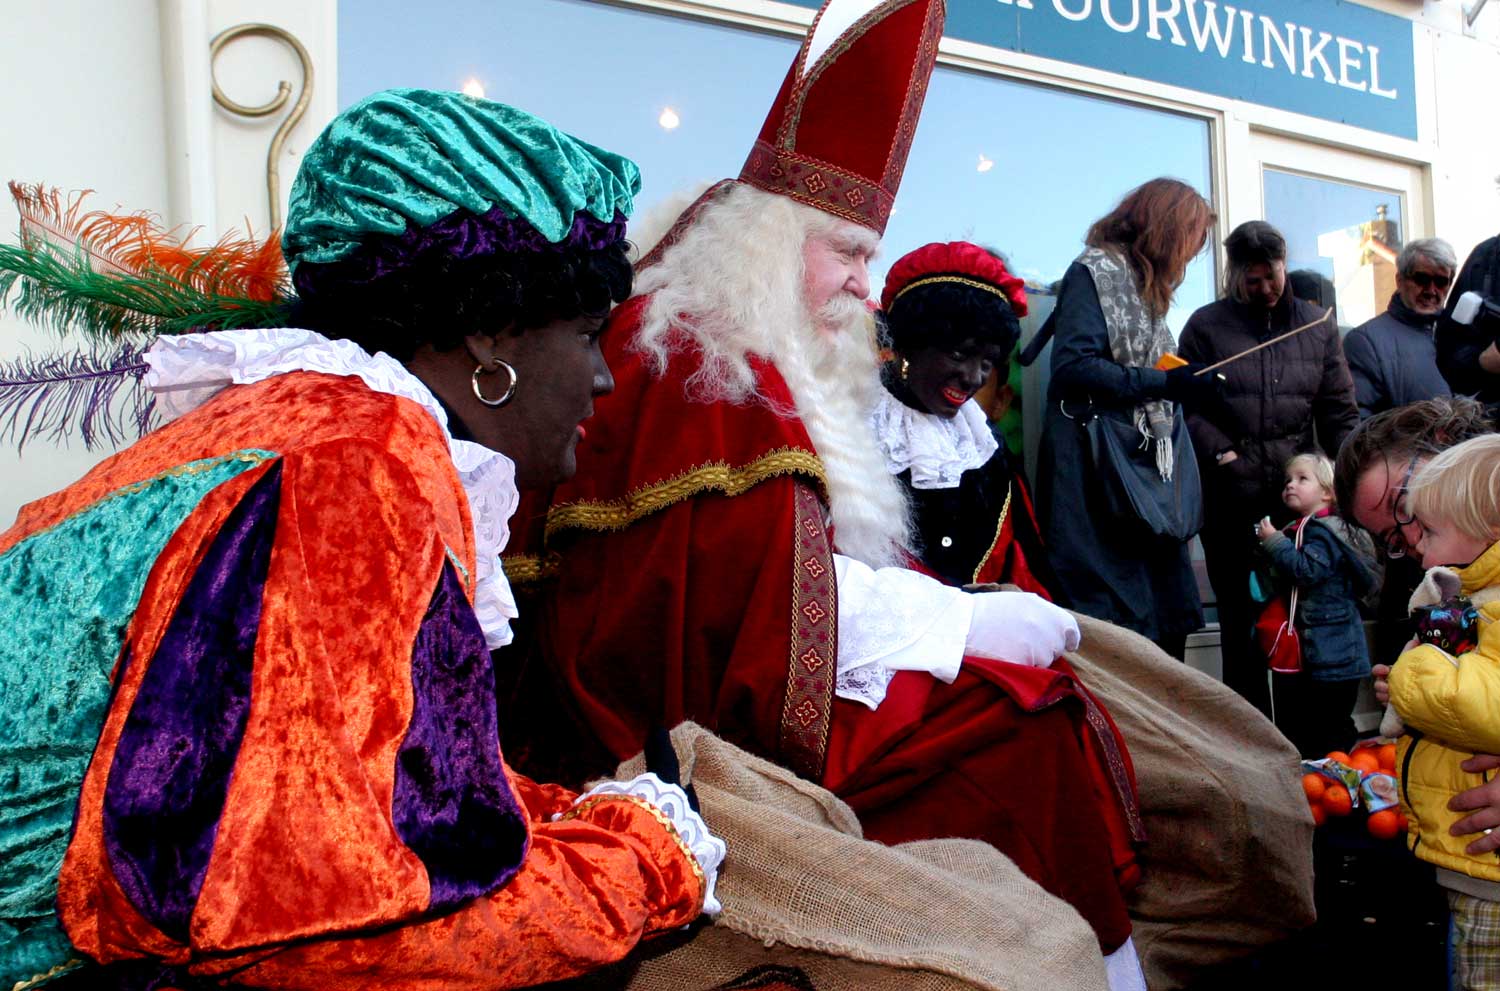  Werkstraf van 40 uur voor belediging anti-Zwarte Piet beweging